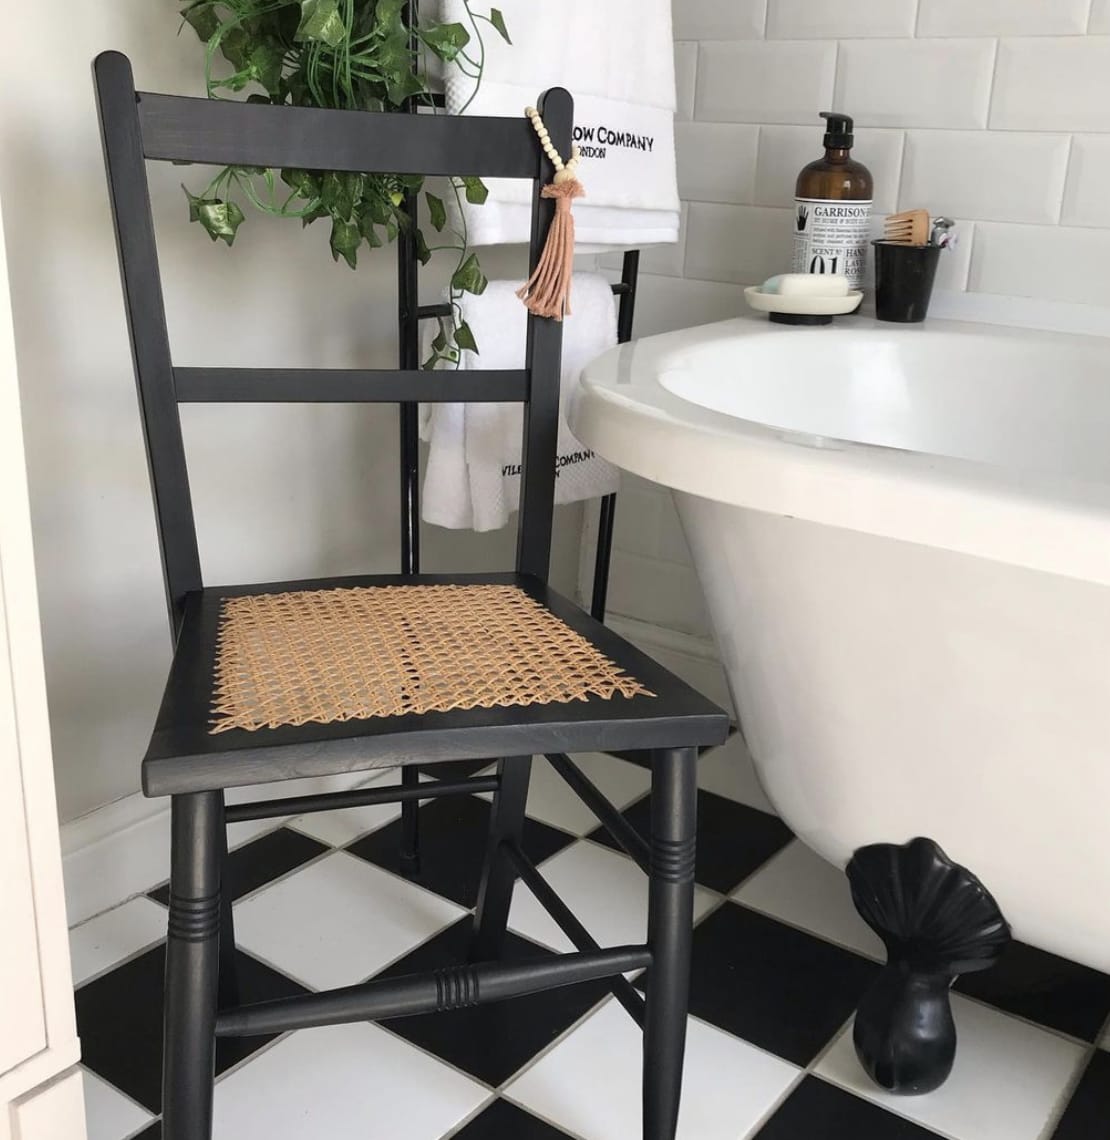 Черный стул с плетеным сиденьем в черно-белой ванной комнате